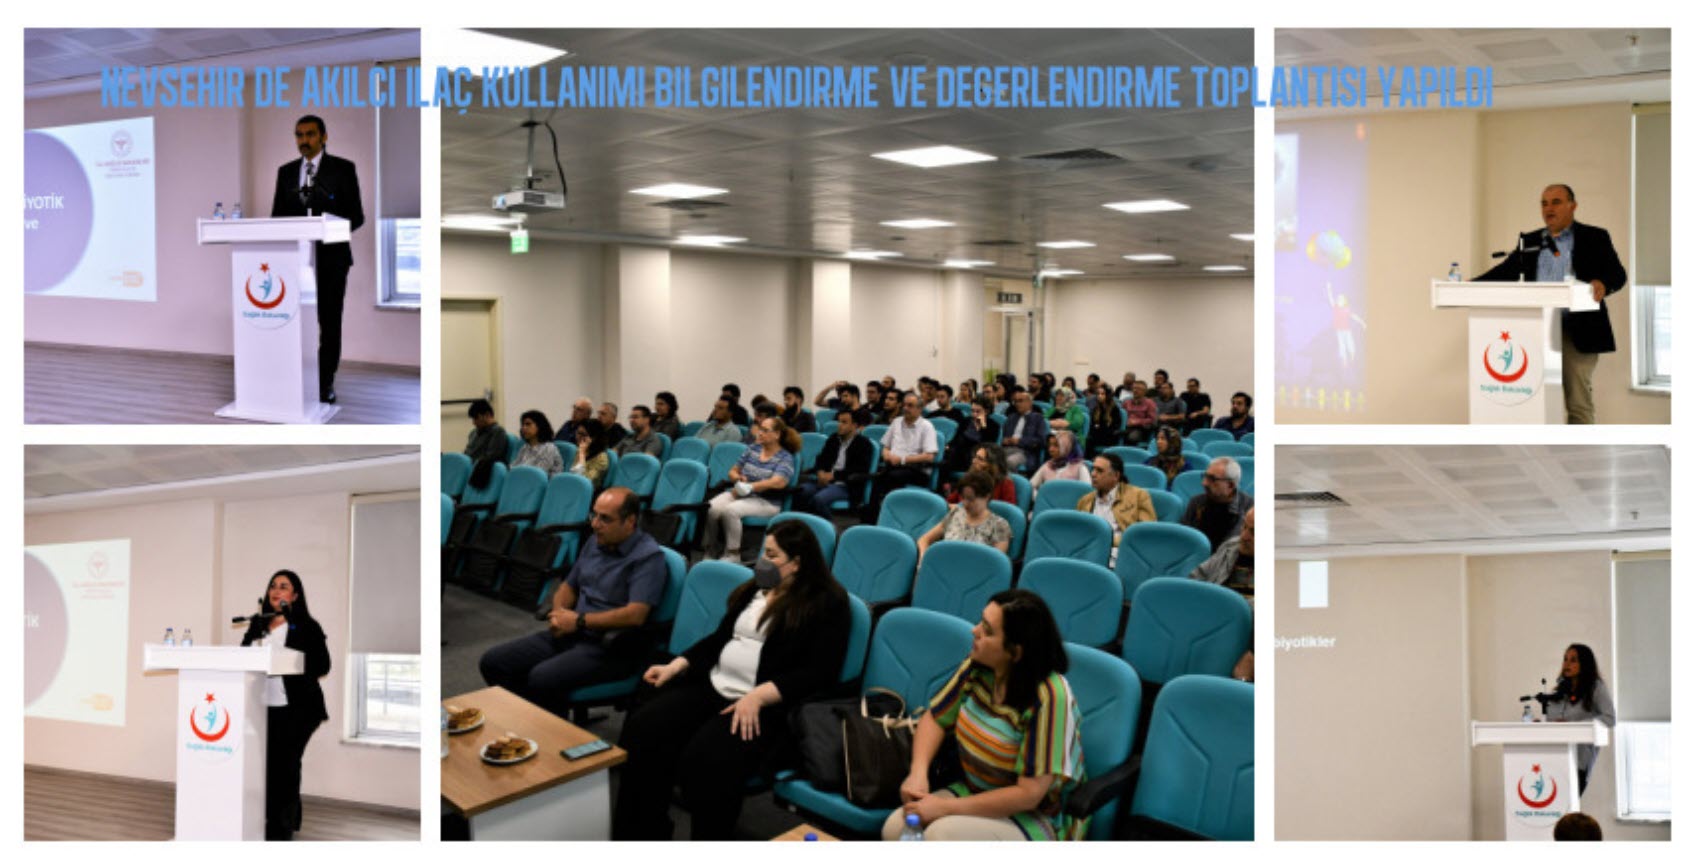 Nevşehir de Akılcı İlaç Kullanımı Bilgilendirme ve Değerlendirme Toplantısı Yapıldı